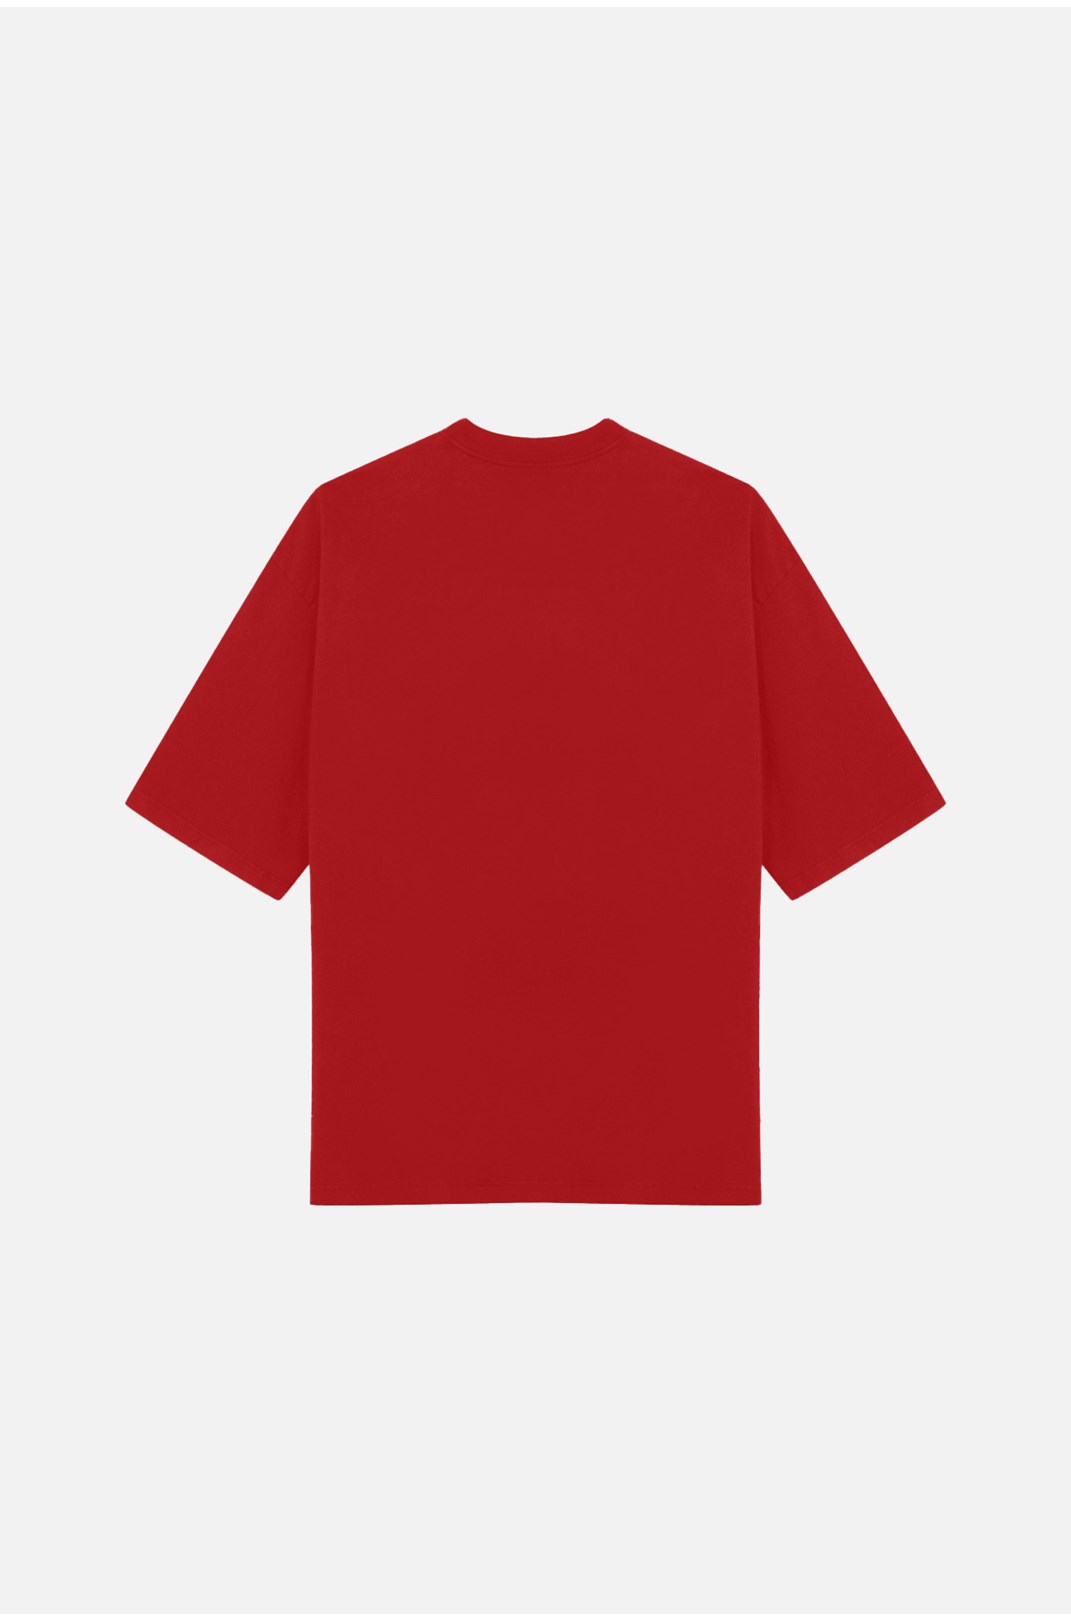 Camiseta No-sew Approve Big Logo Vermelha